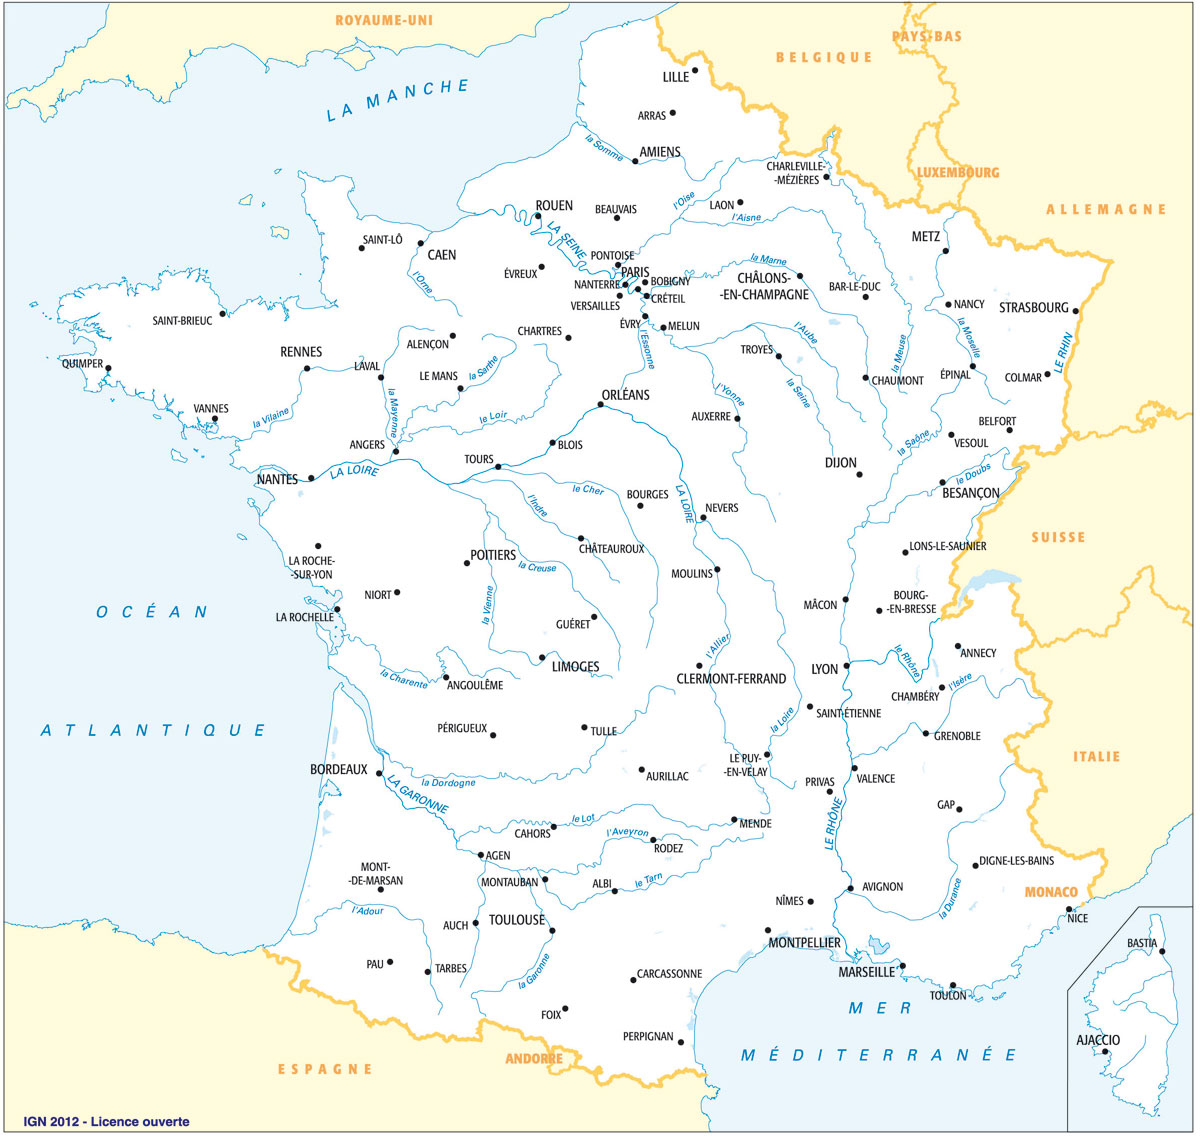 Cartes des fleuves et rivières de France - Quiz éducatifs